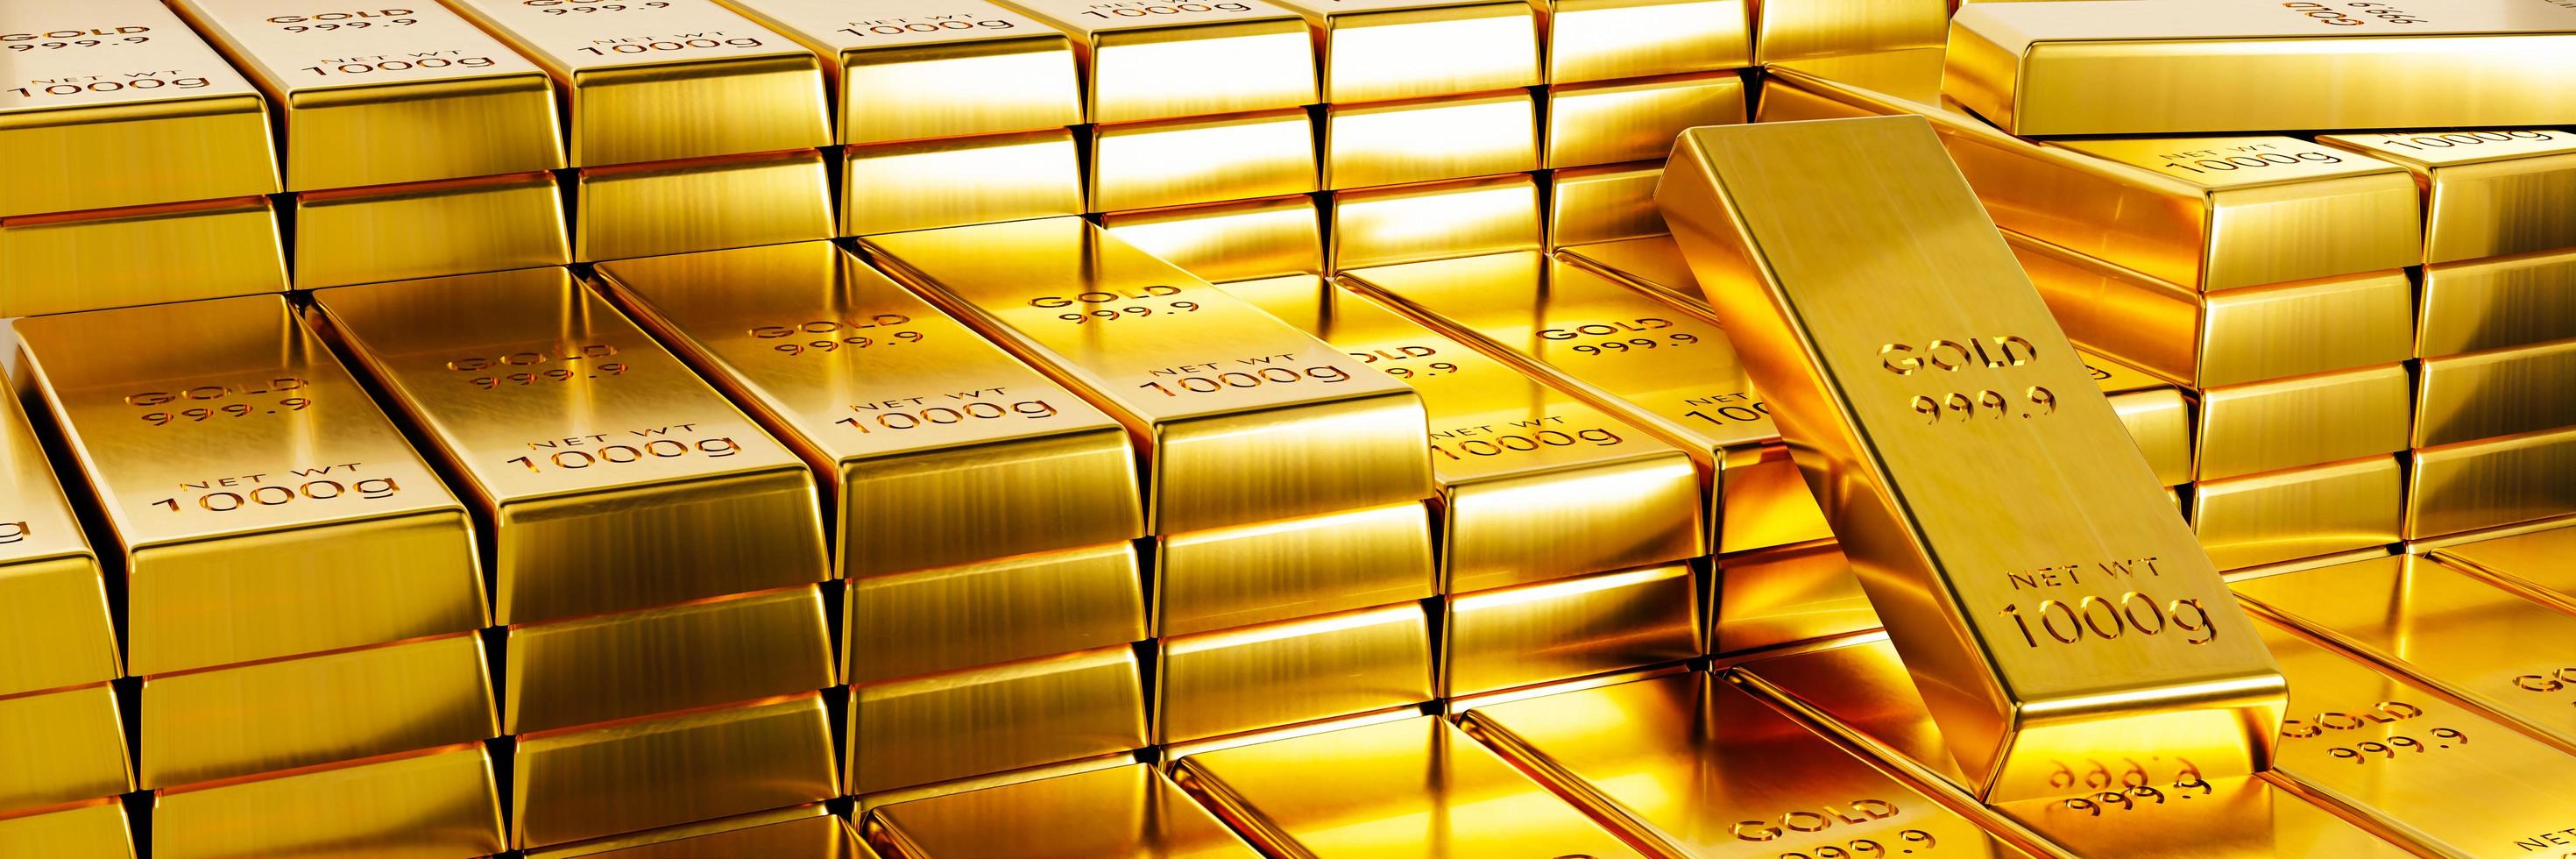 Goldbarren 999,9 im Devisenhandel beliebt bei der Investition von Investoren während verschiedener Krisen der Welt wie Krieg. 3D-Rendering. foto